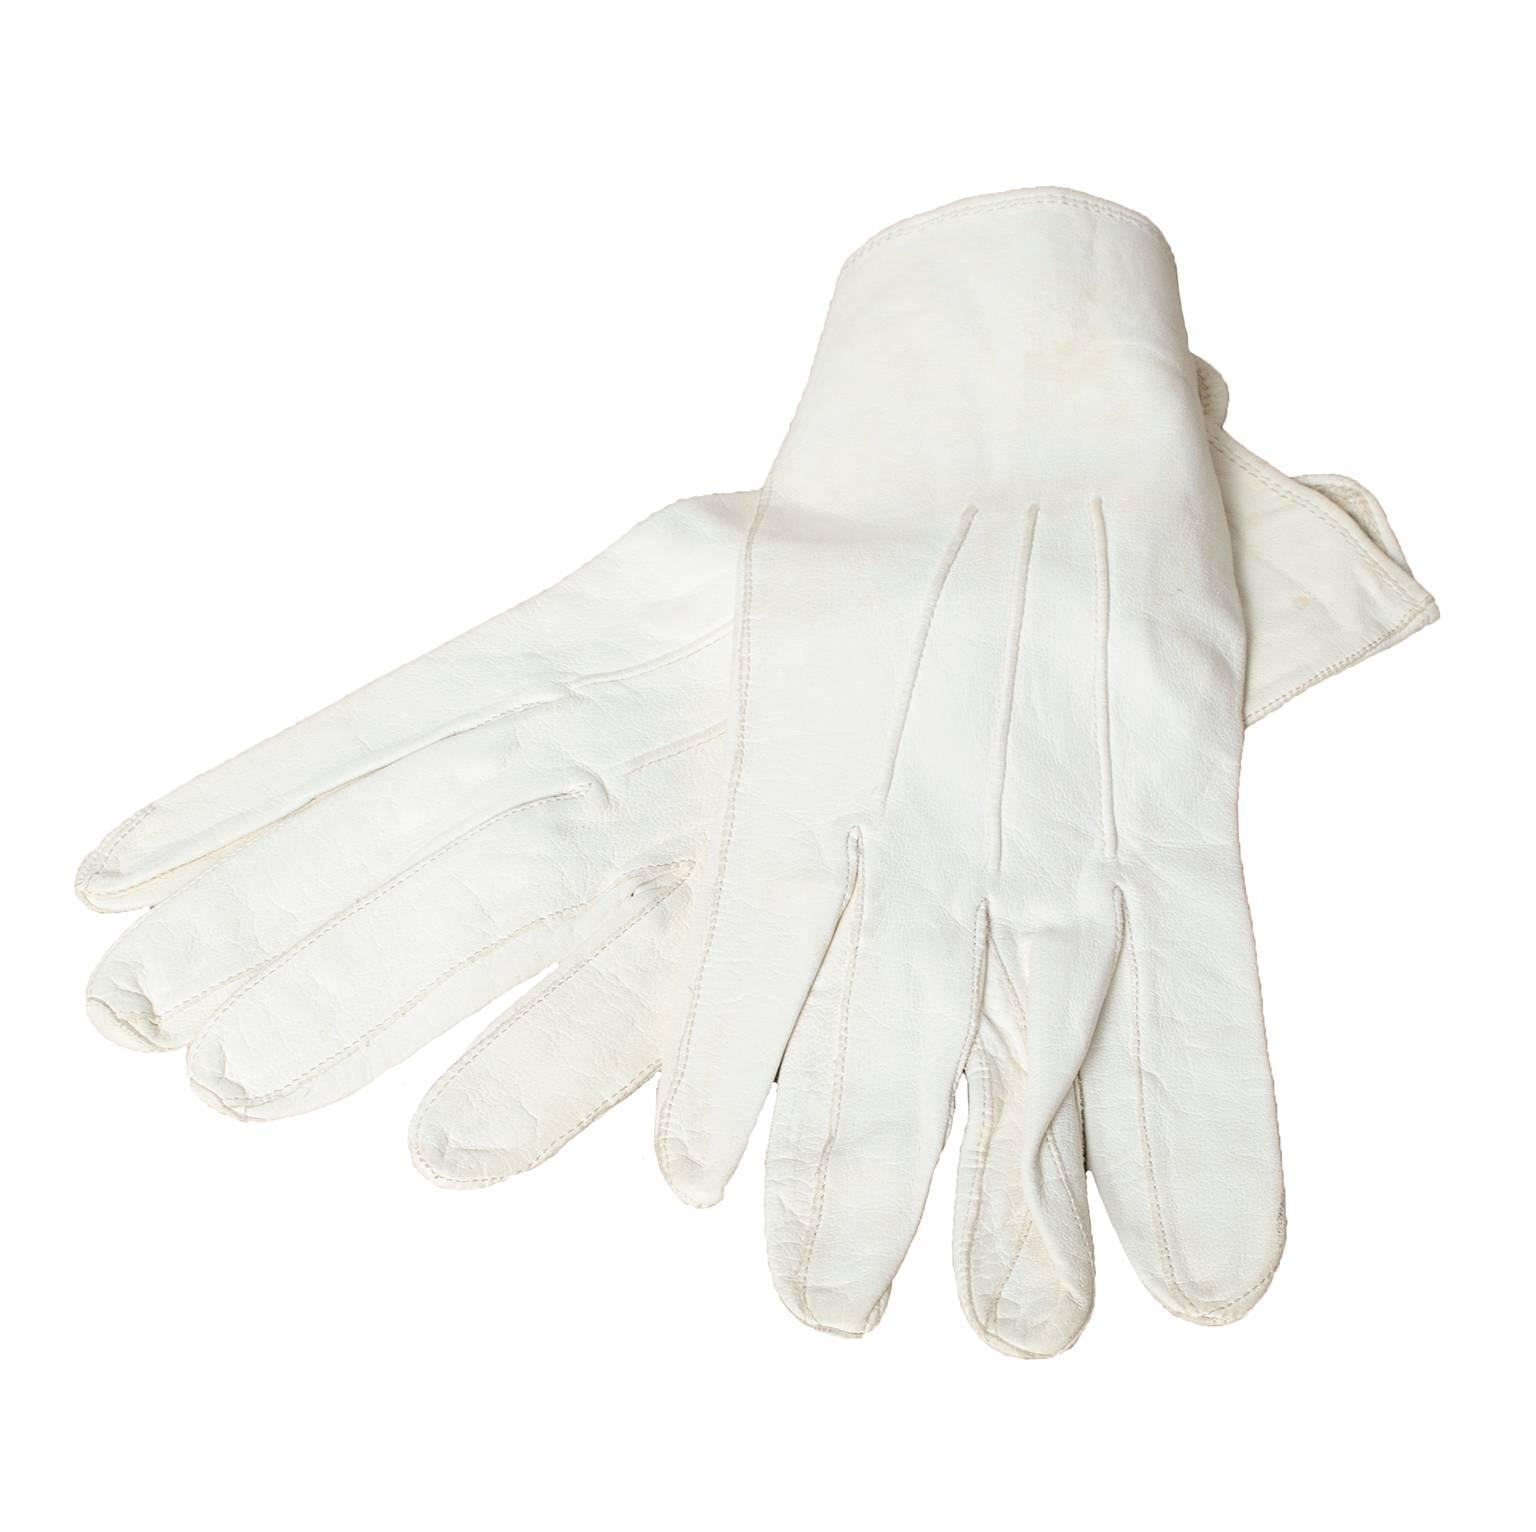 В мешке 24 белых перчаток. Белые кожаные перчатки. Белые перчатки мужские. Перчатки парадные белые. Белые шёлковые перчатки мужские.